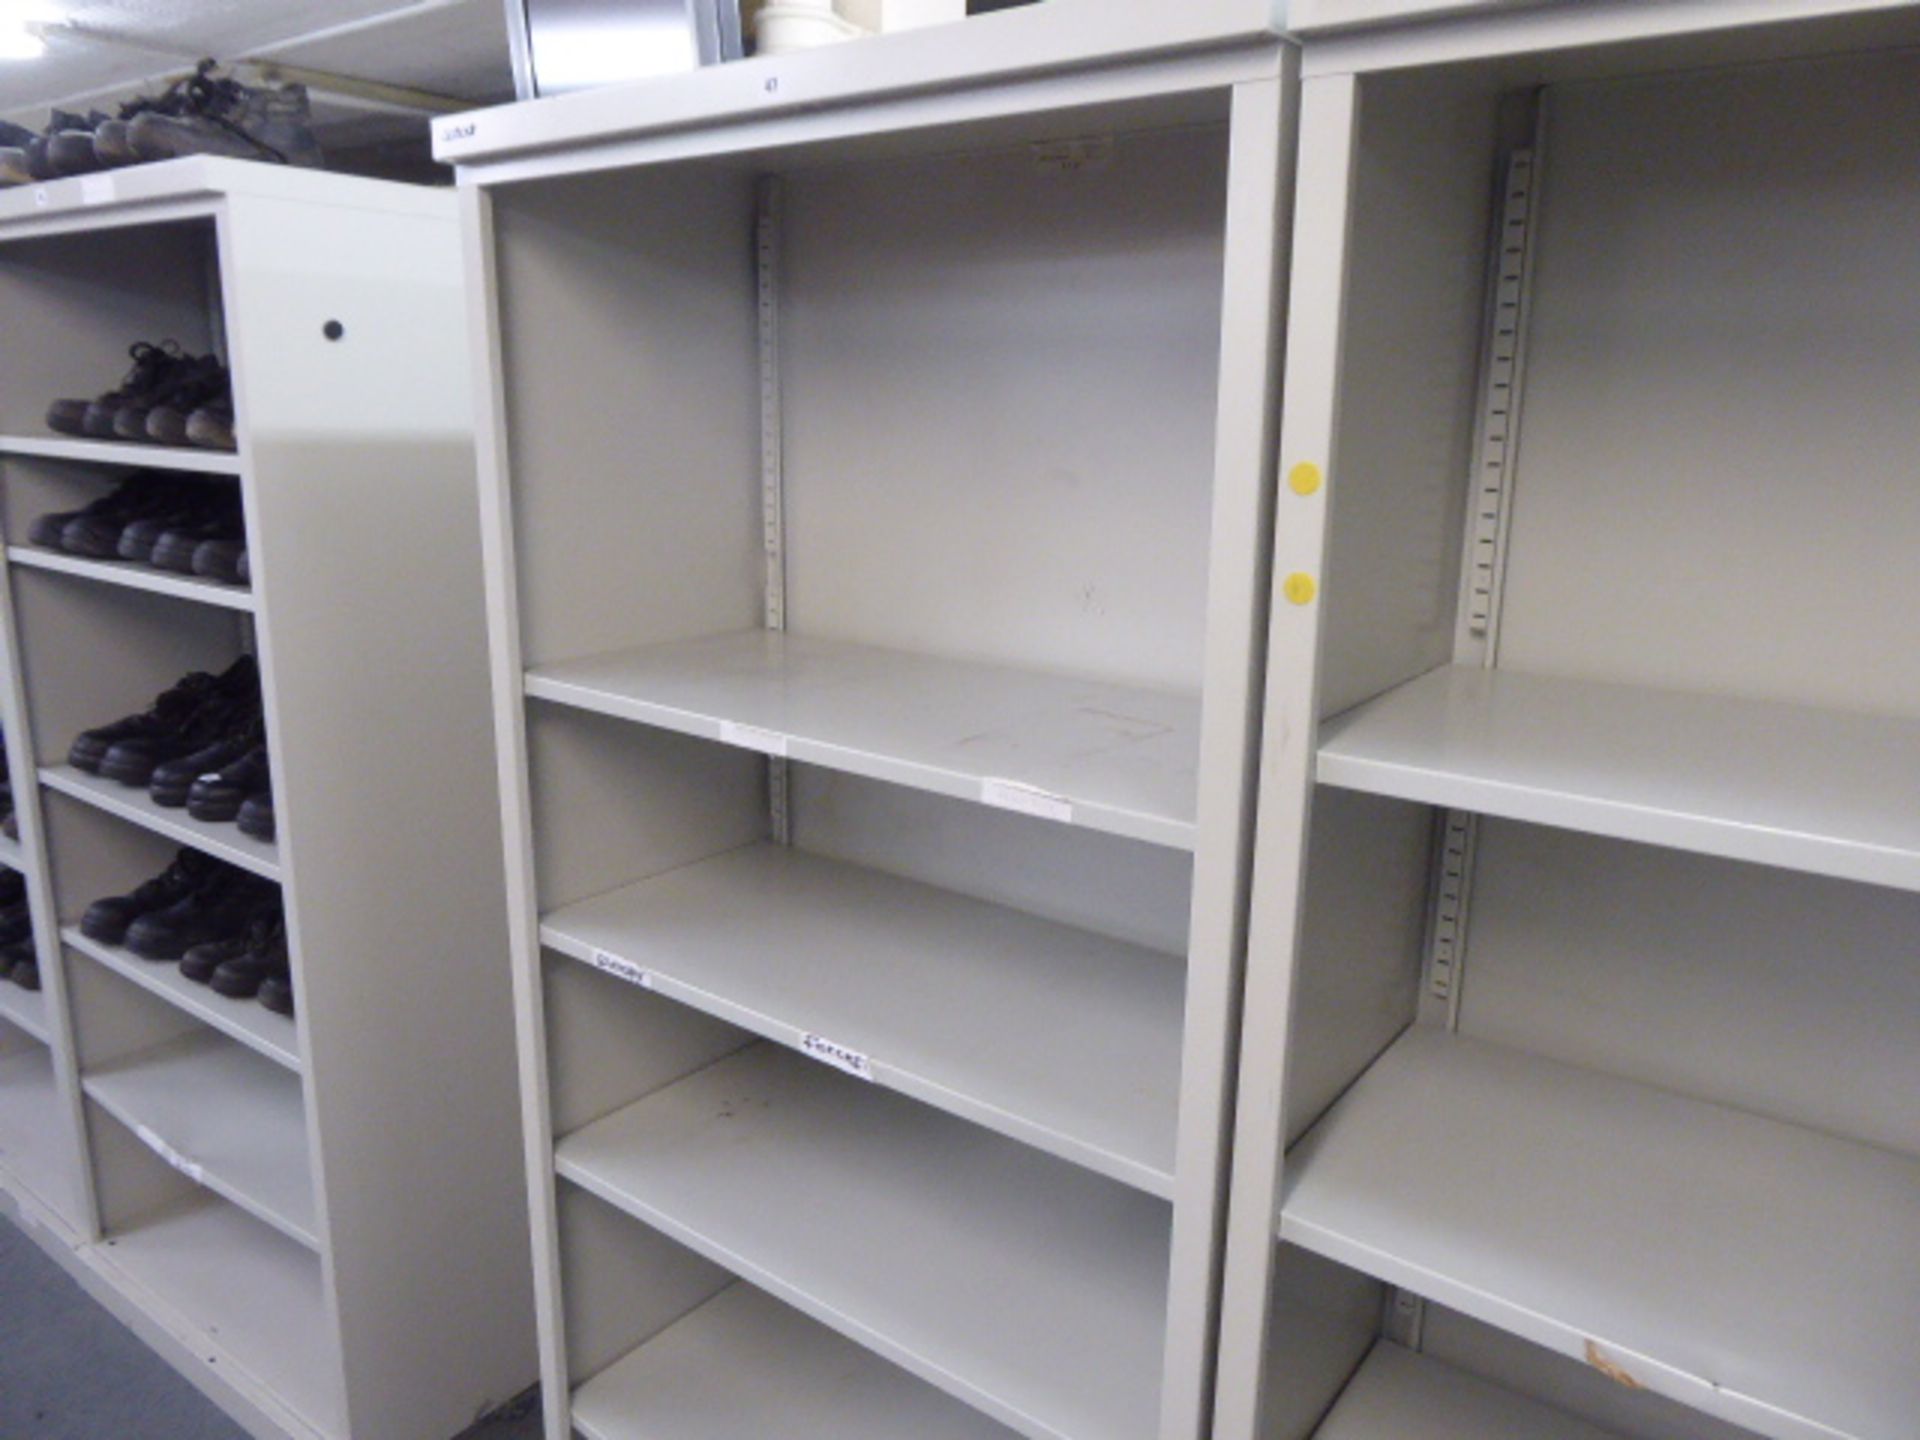 2 90cm Bisley grey open front shelves